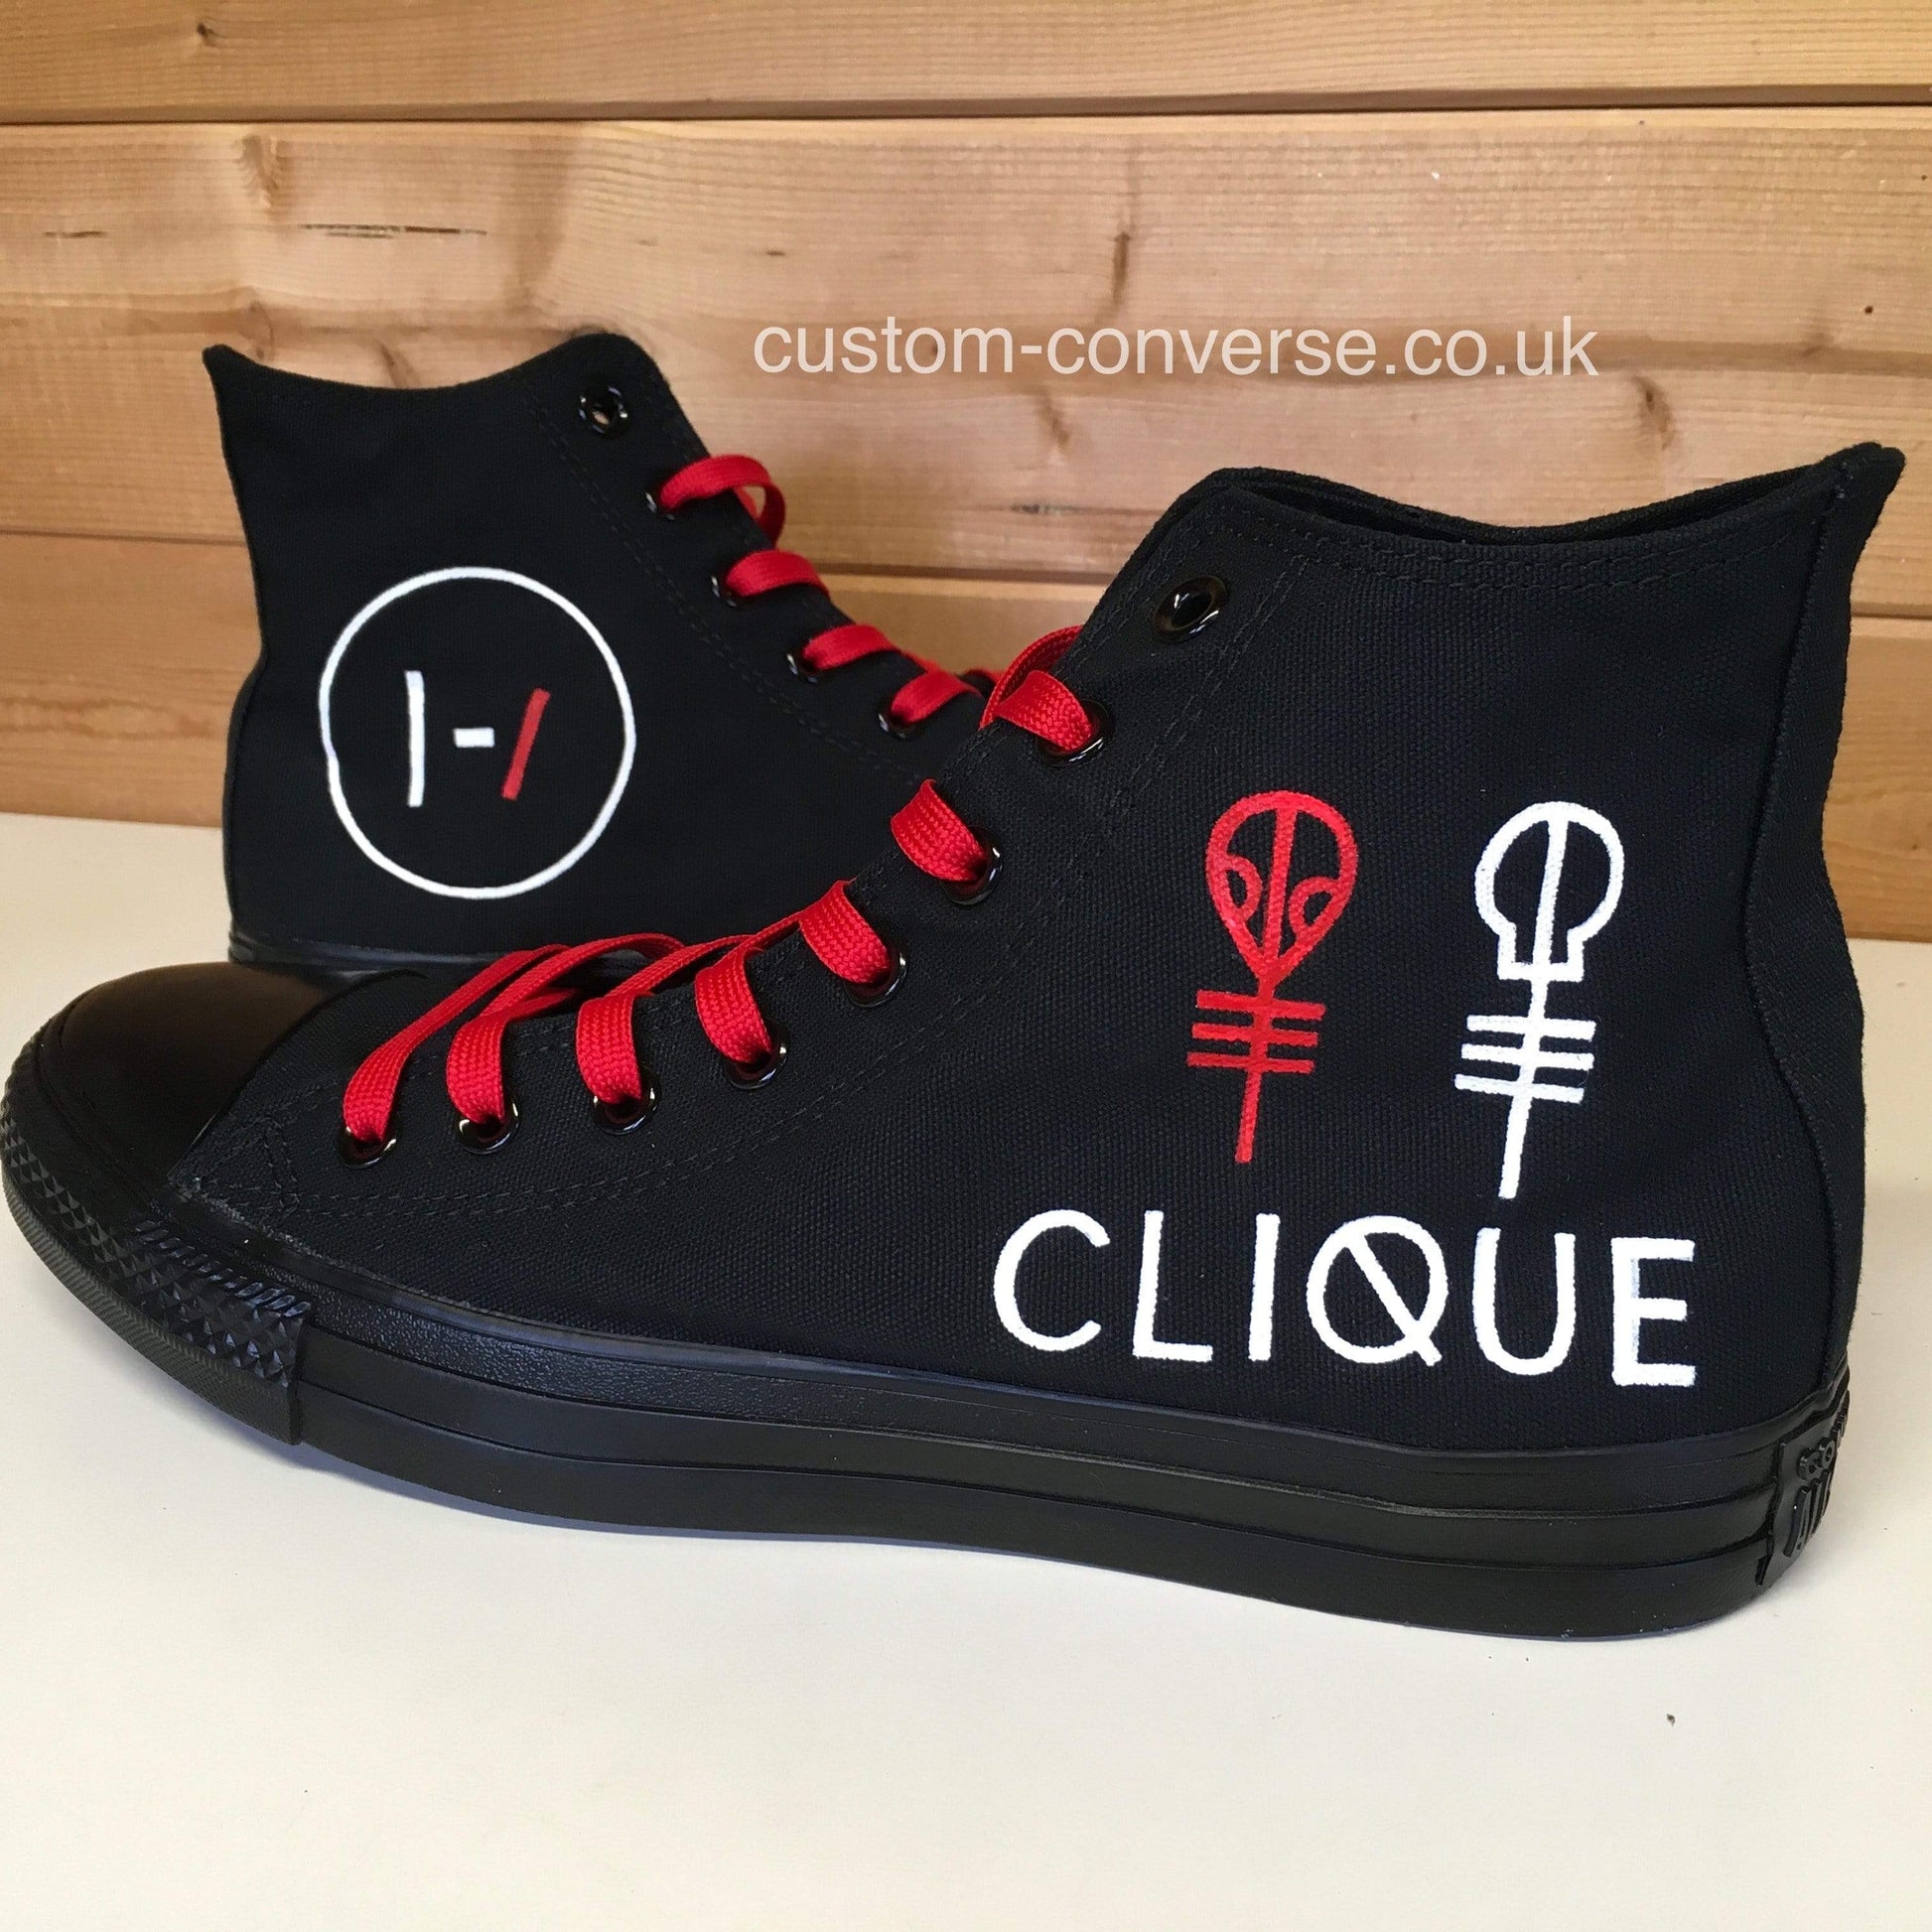 Twenty One Pilots Clique - Custom Converse Ltd.